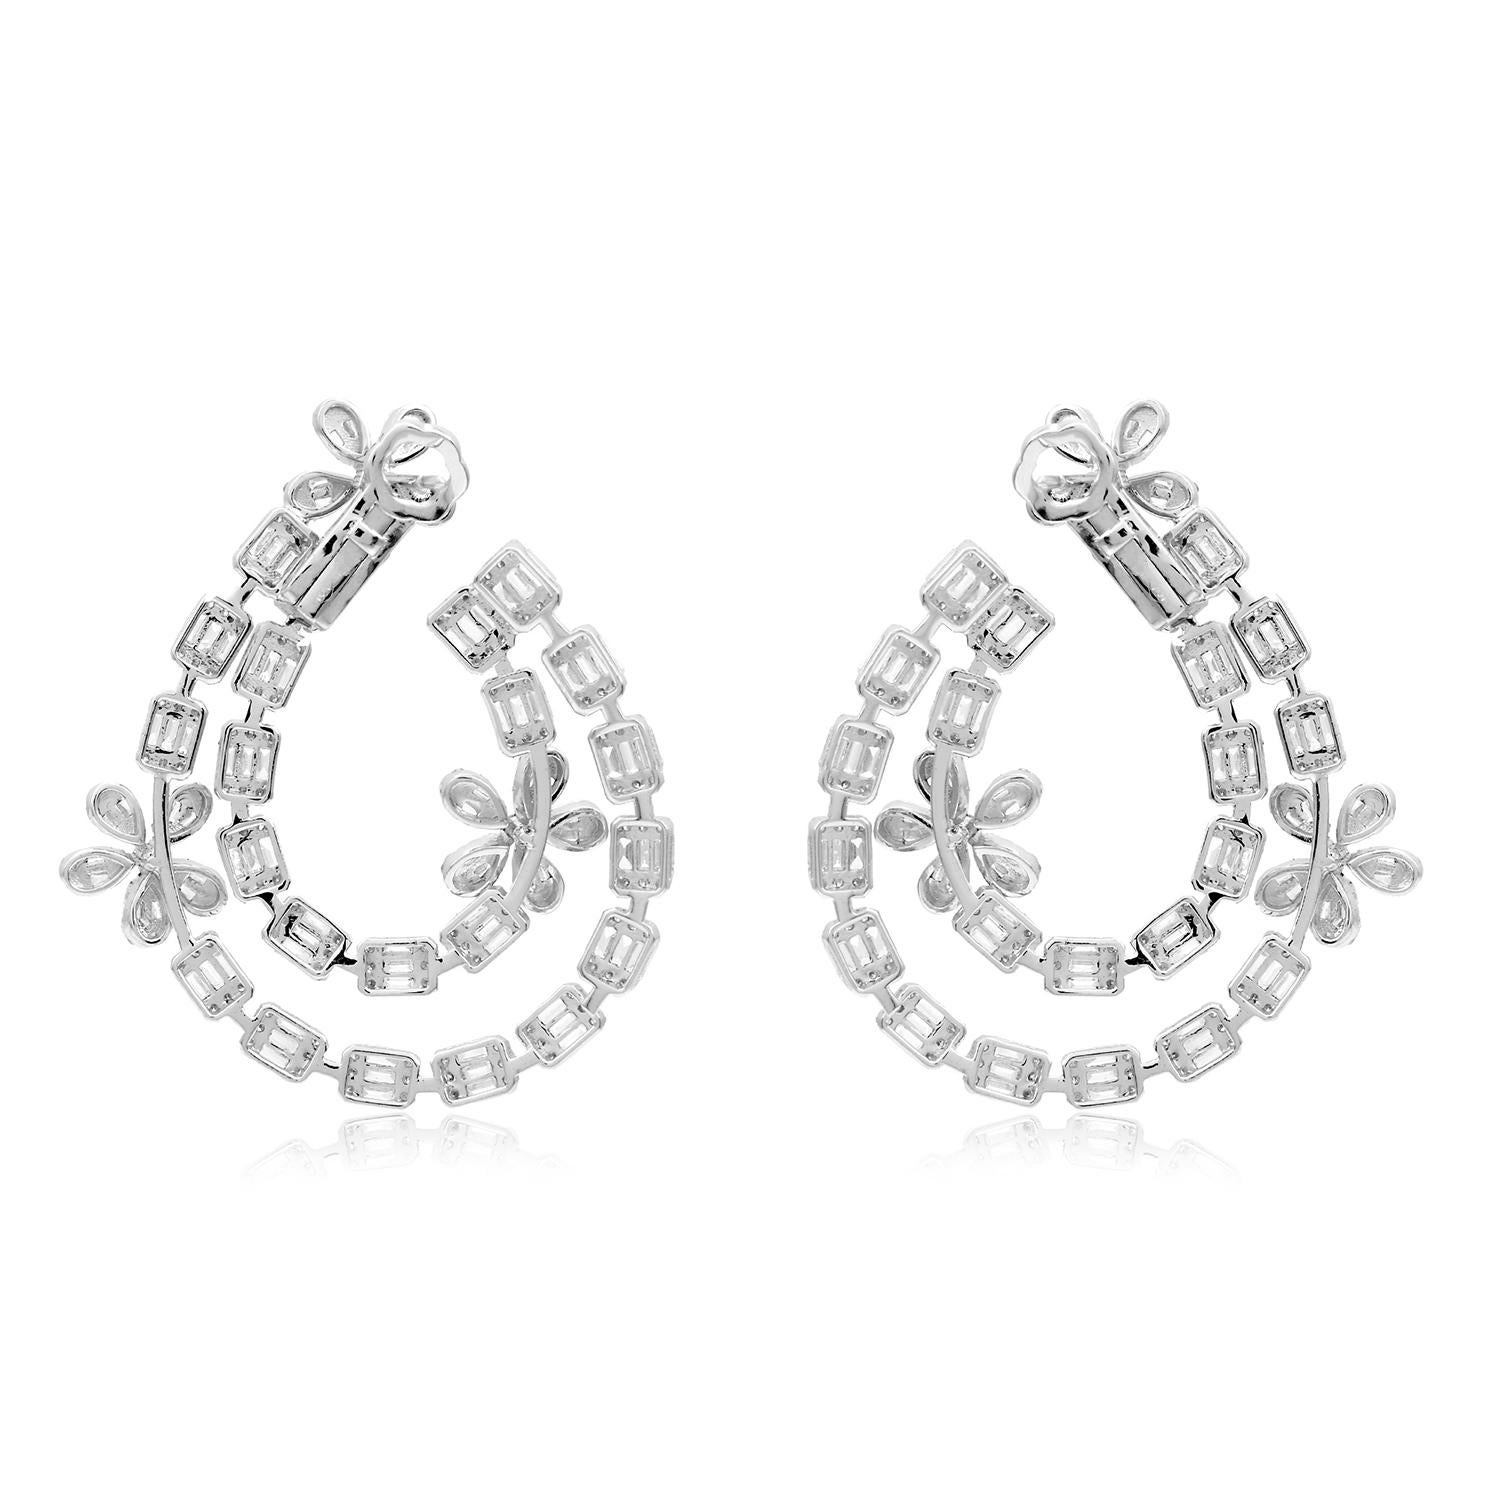 Baguette Cut 7.40 Carat SI/HI Baguette Diamond Flower Earrings 18 Karat White Gold Jewelry For Sale